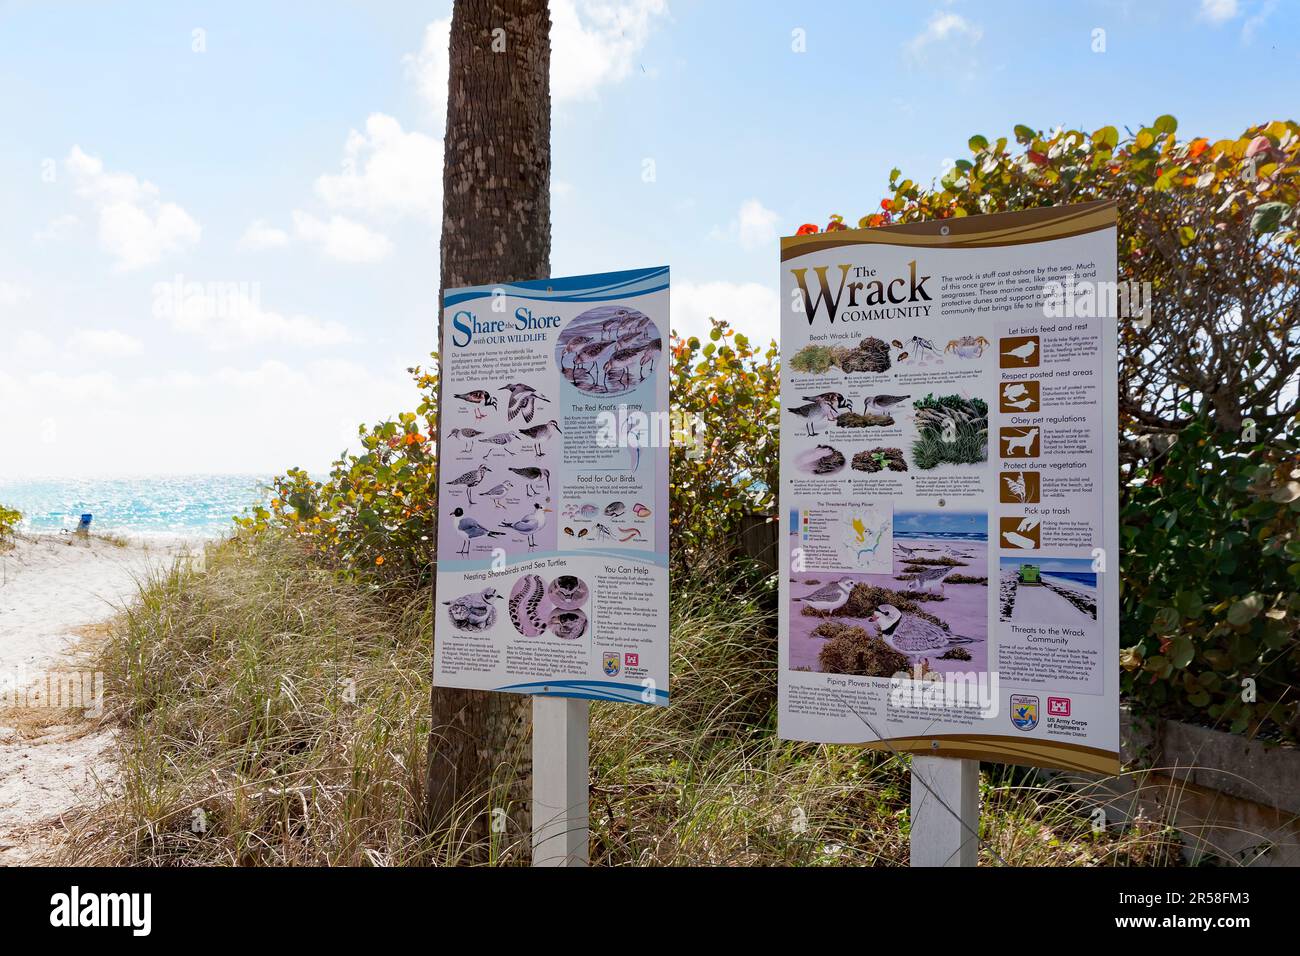 Segno che spiega il significato e l'importanza del wrack spiaggia, il materiale naturale che lava a terra e agisce come fertilizzante organico per l'ecosistema. Foto Stock